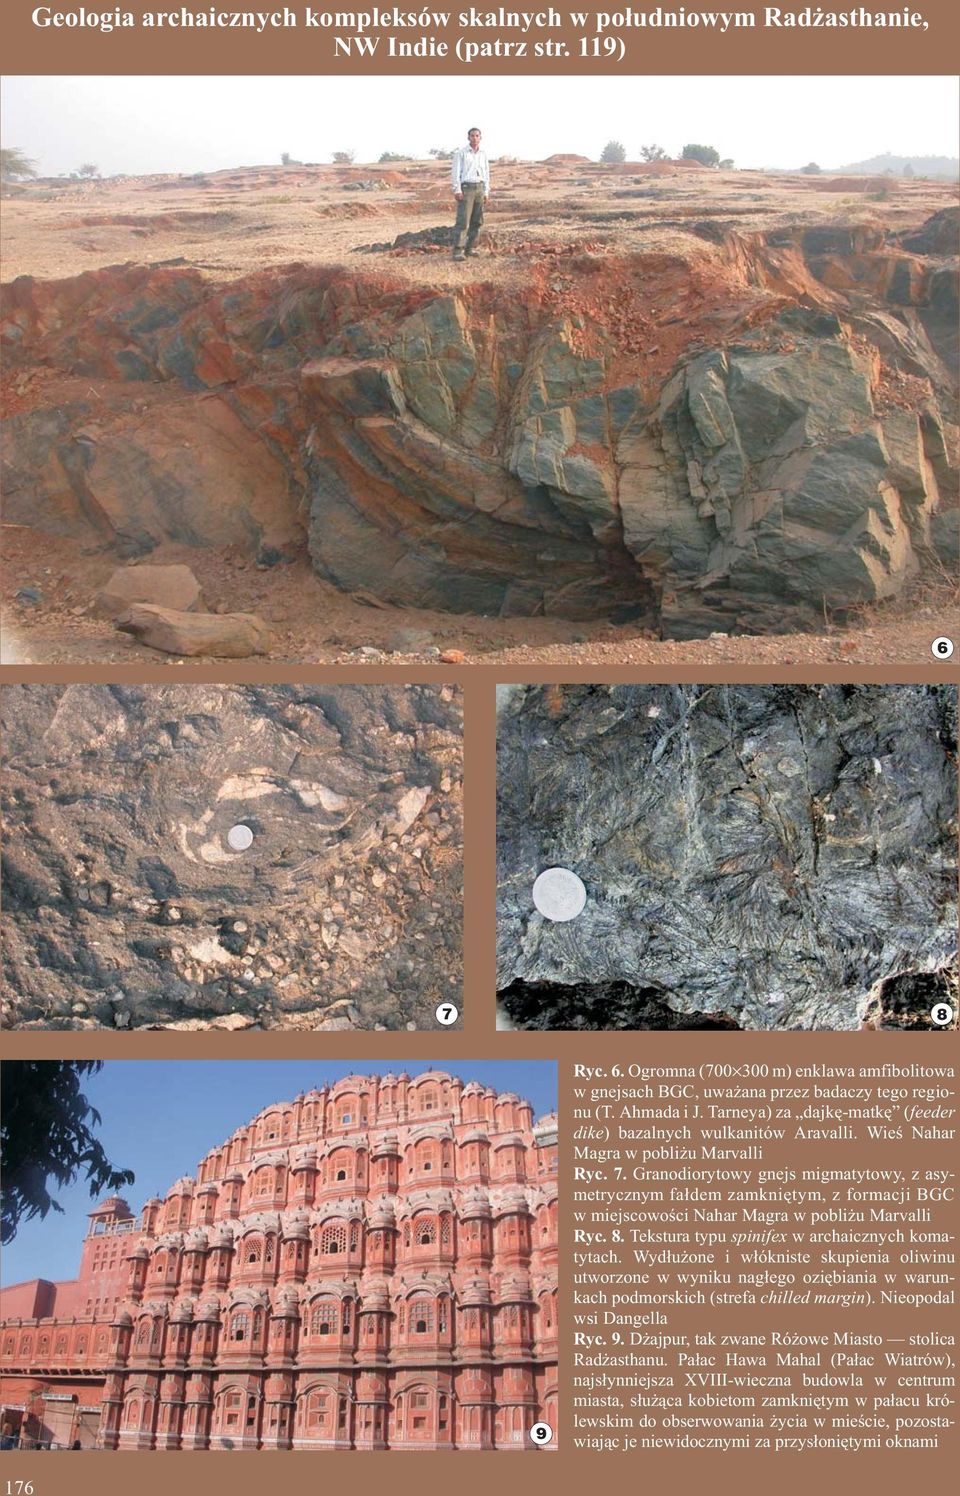 Granodiorytowy gnejs migmatytowy, z asymetrycznym fa³dem zamkniêtym, z formacji BGC w miejscowoœci Nahar Magra w pobli u Marvalli Ryc. 8. Tekstura typu spinifex w archaicznych komatytach.